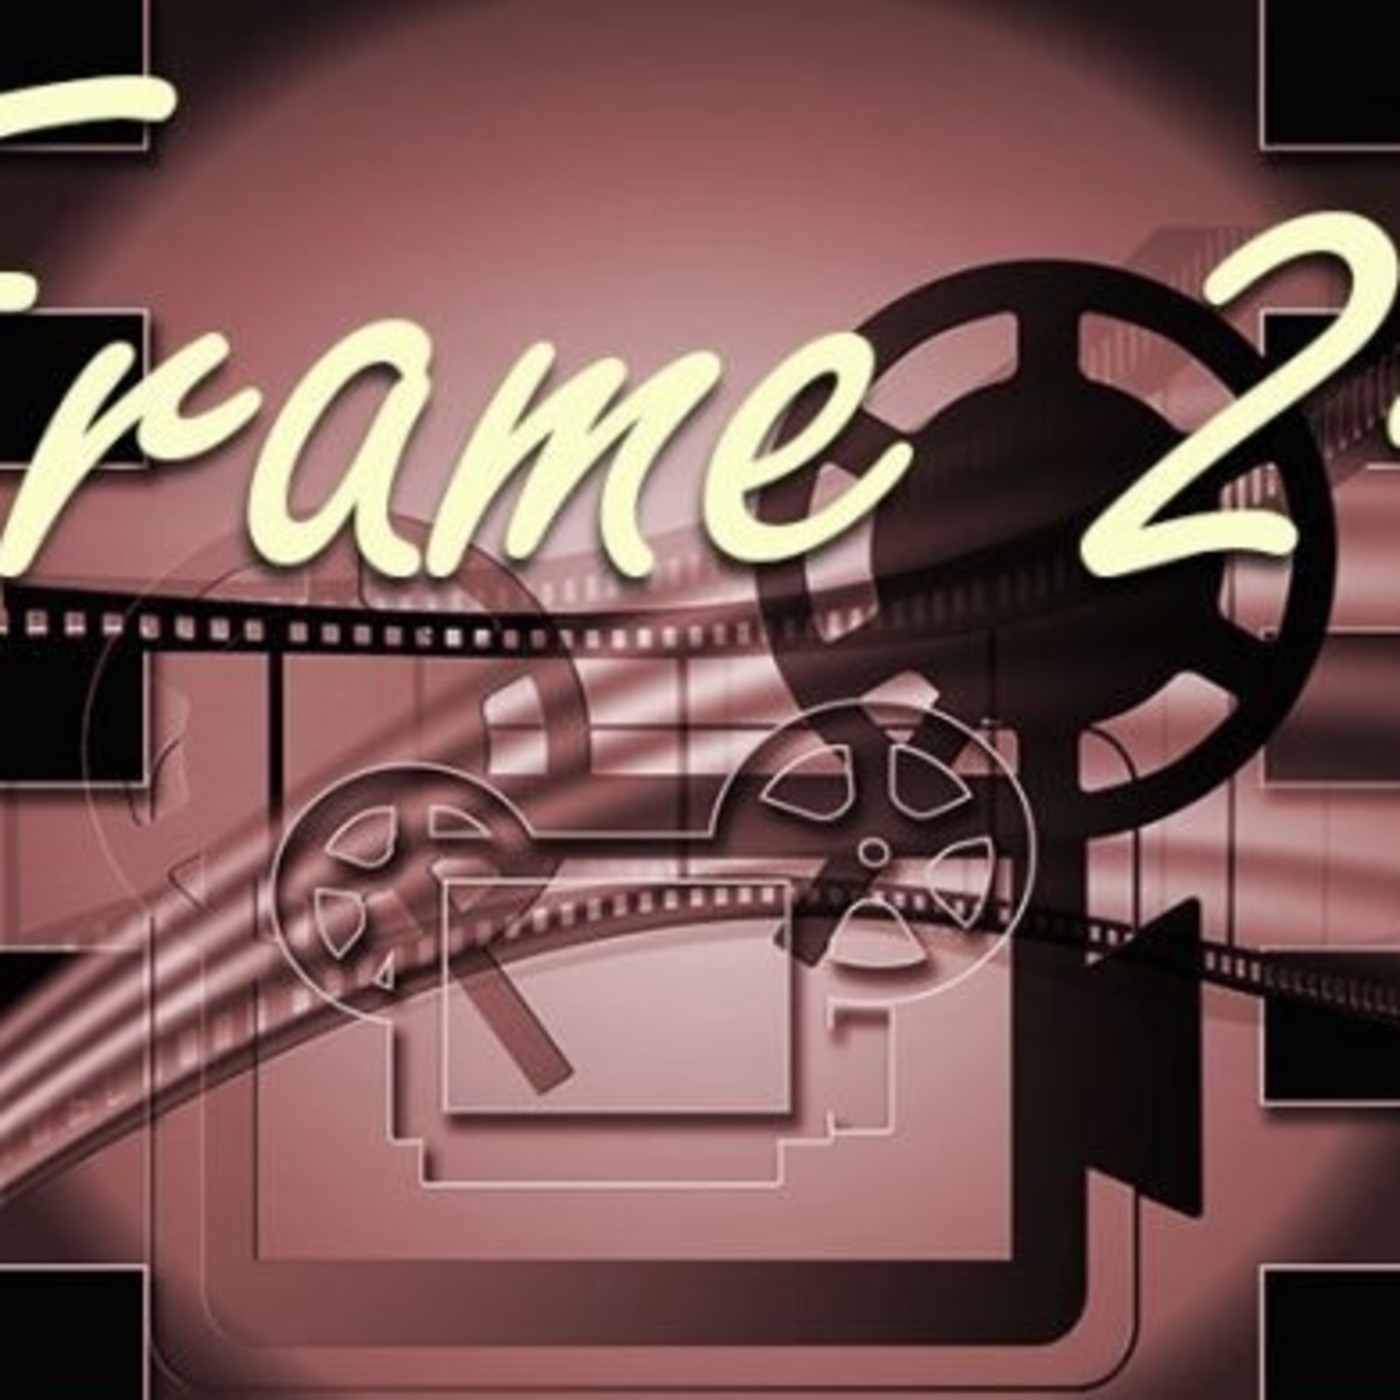 Frame 24, 8-II-18